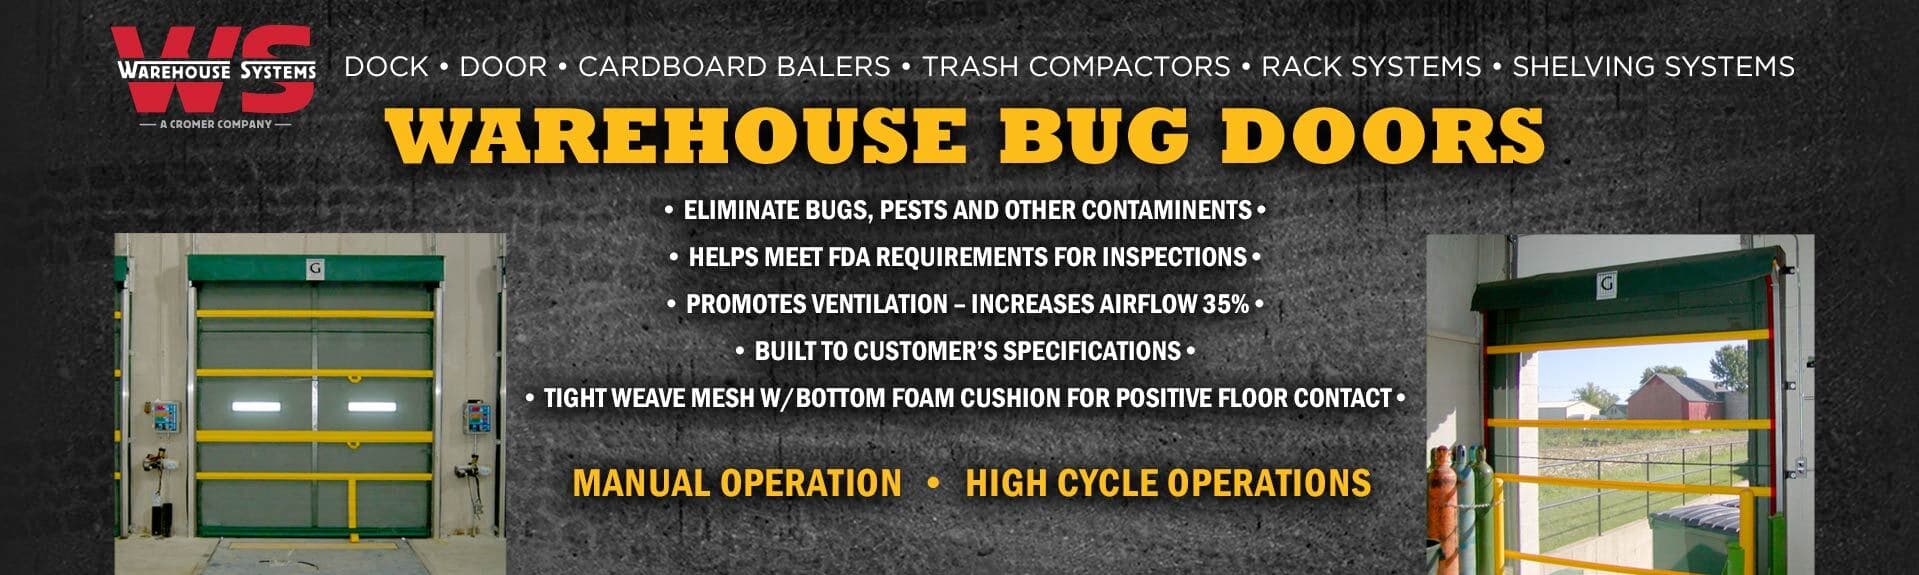 Warehouse Bug Door Sale